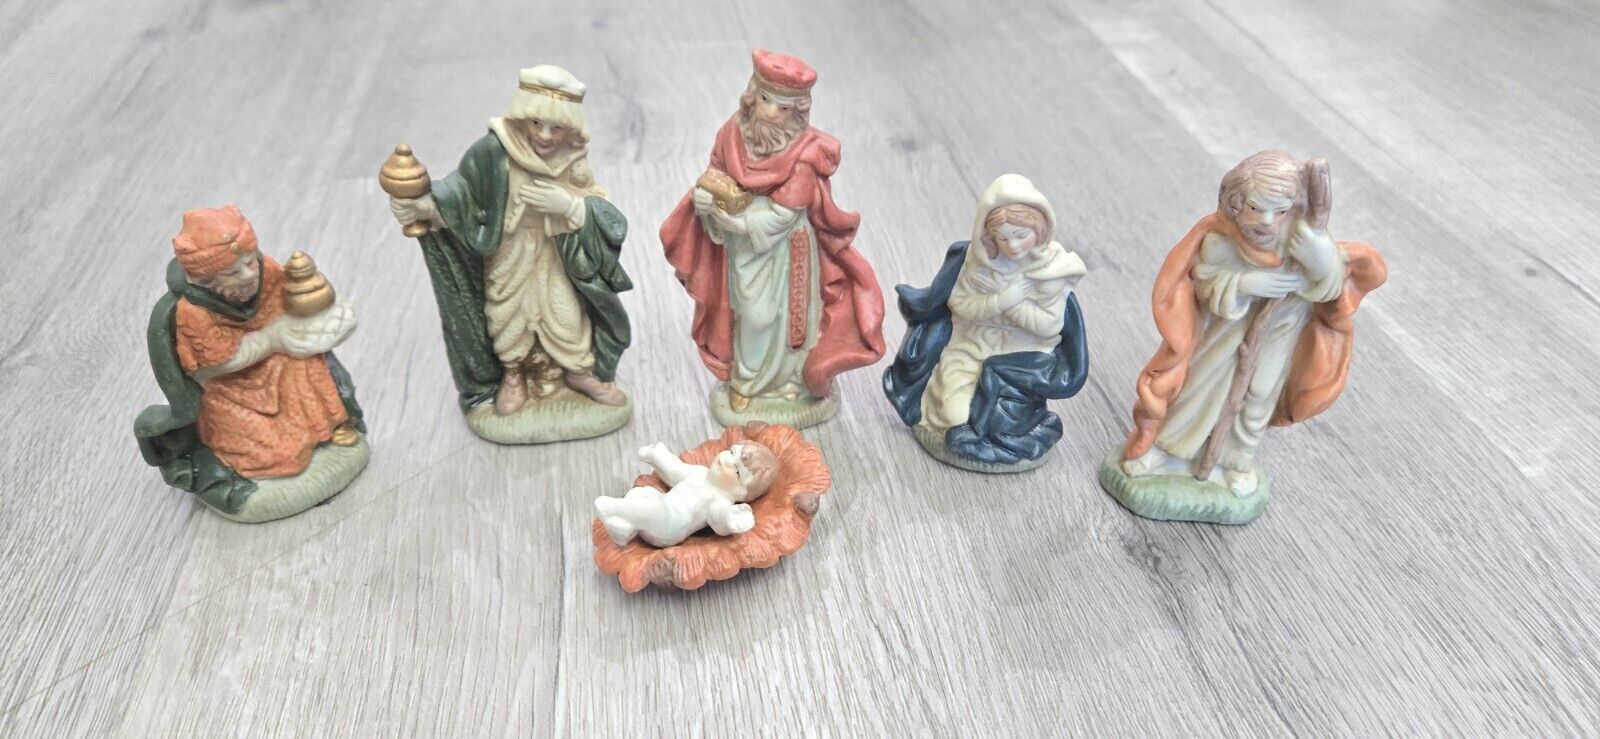 7 Piece Ceramic /Porcelain Christmas Nativity Set - Figures 4\